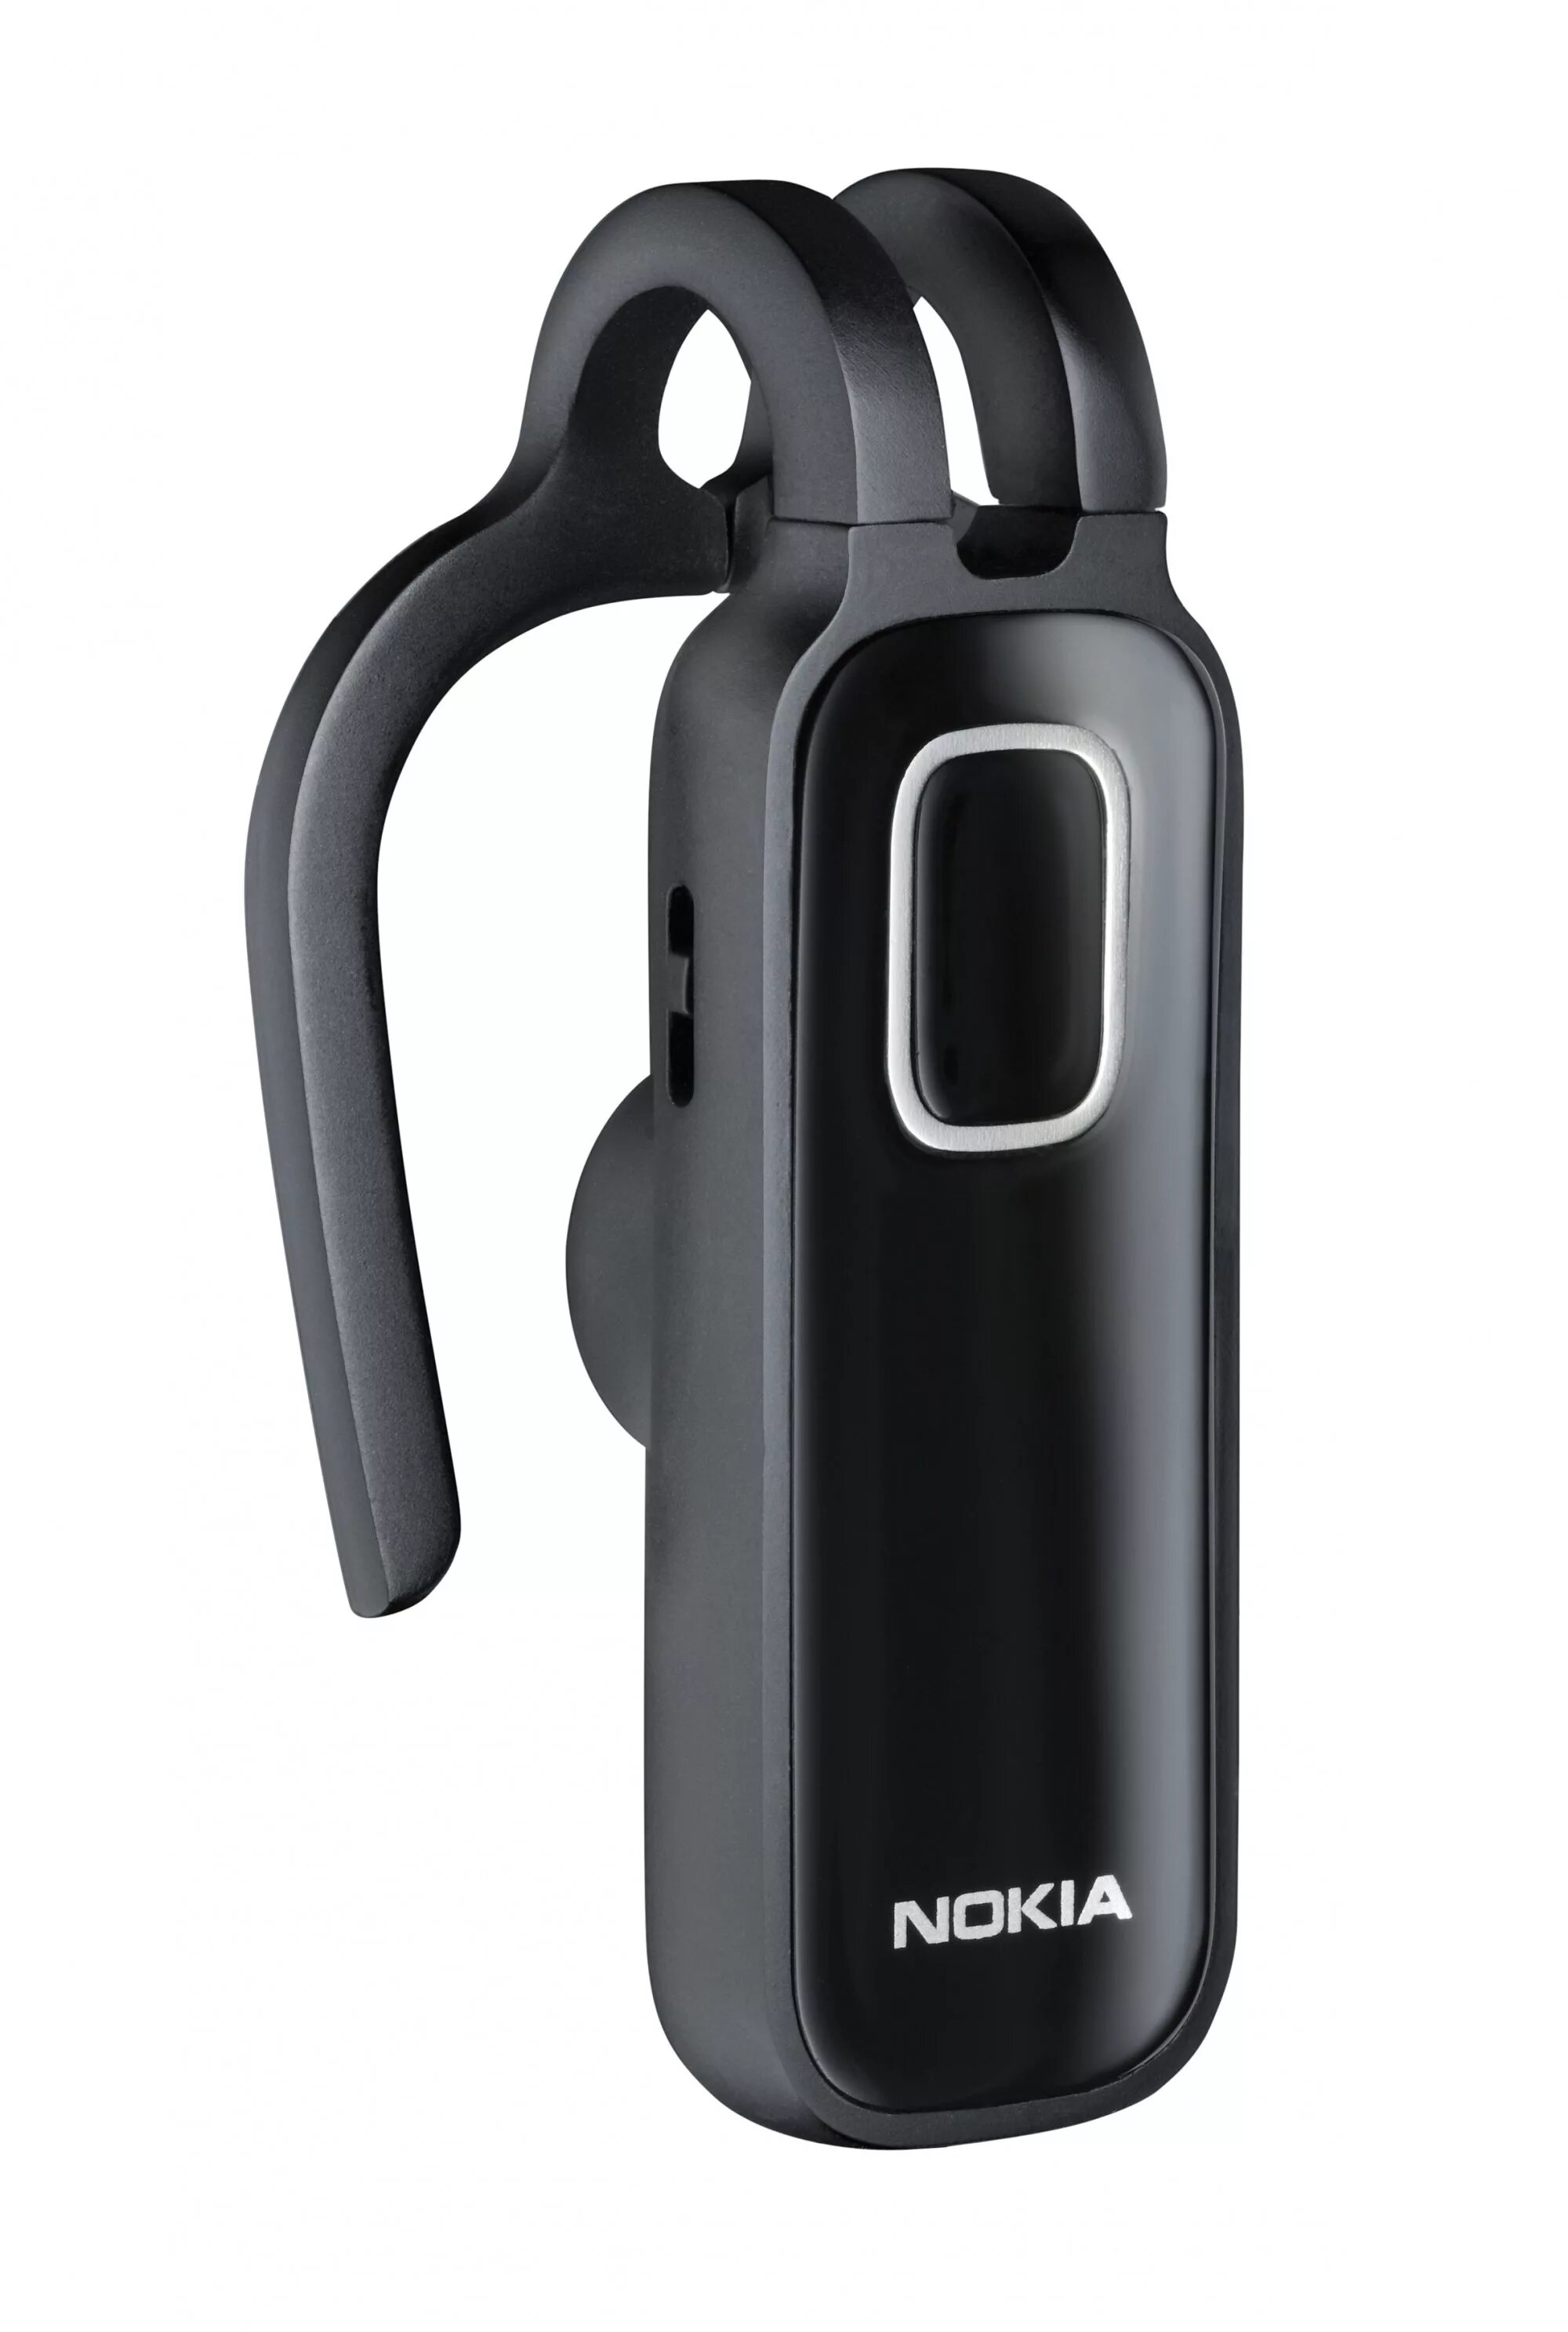 Блютуз нокия. Bluetooth-гарнитура Nokia BH-212. Bluetooth-гарнитура Nokia BH-210. BH-210 гарнитура Nokia. Bluetooth-гарнитура Nokia BH-211.